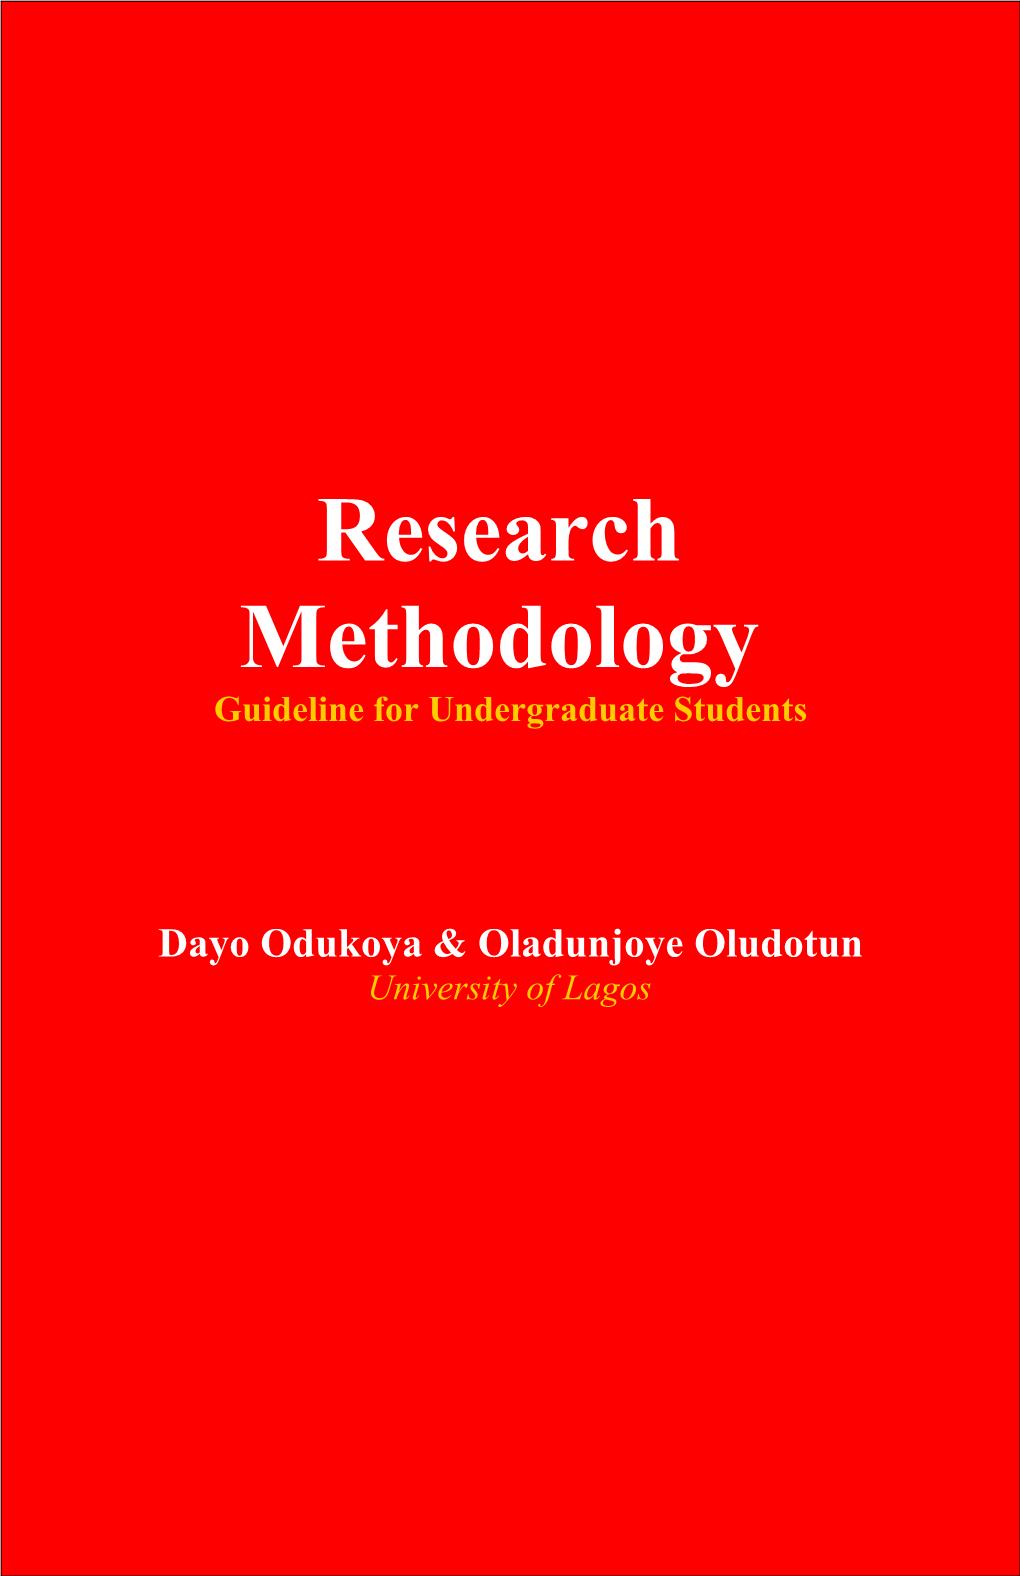 Dayo Odukoya, Ph.D & Oladunjoye Oludotun, Ph.D